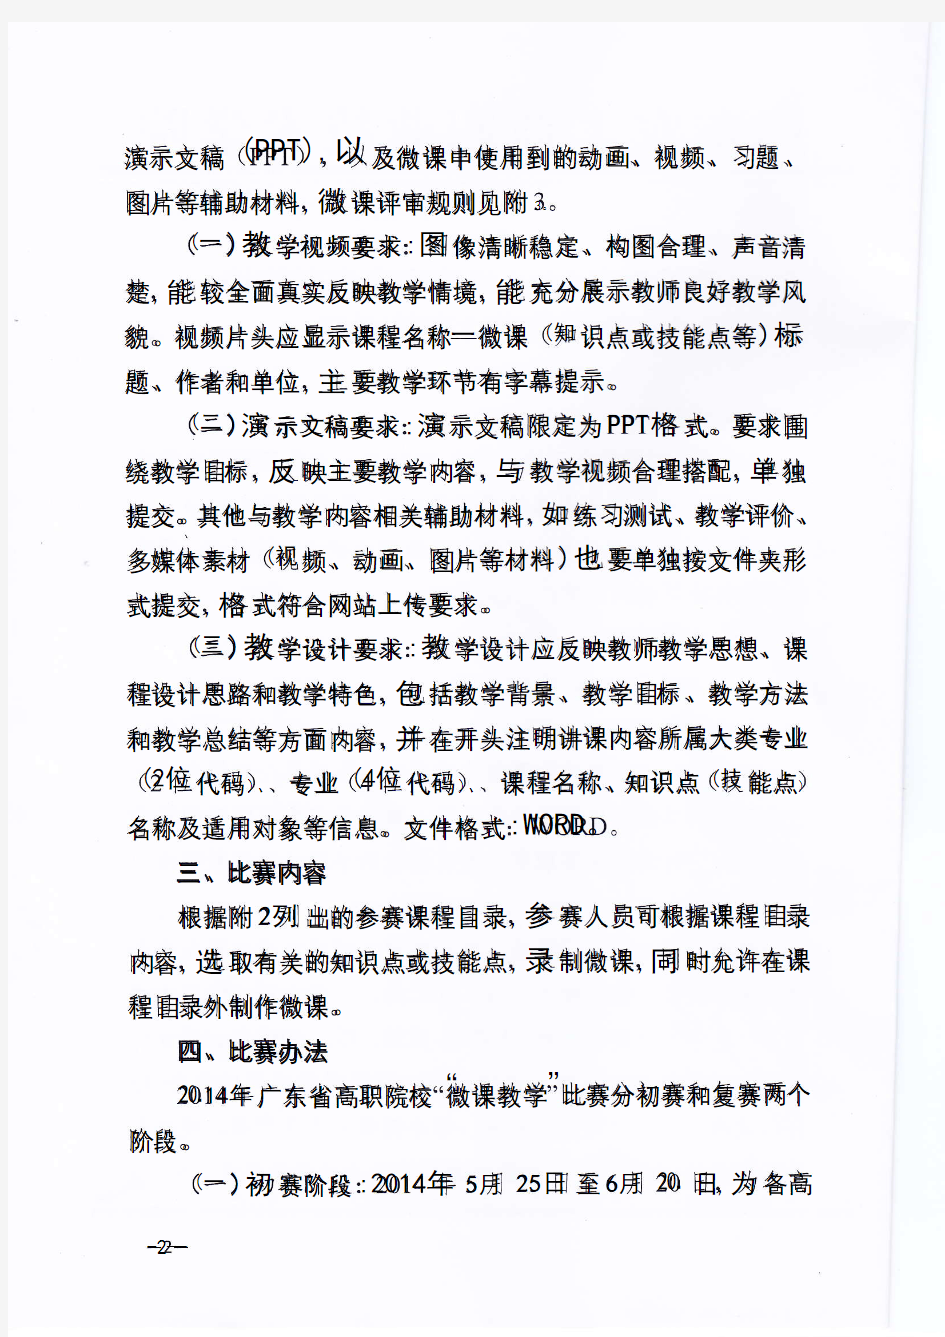 关于举办2014年广东省高职院校微课教学比赛的通知